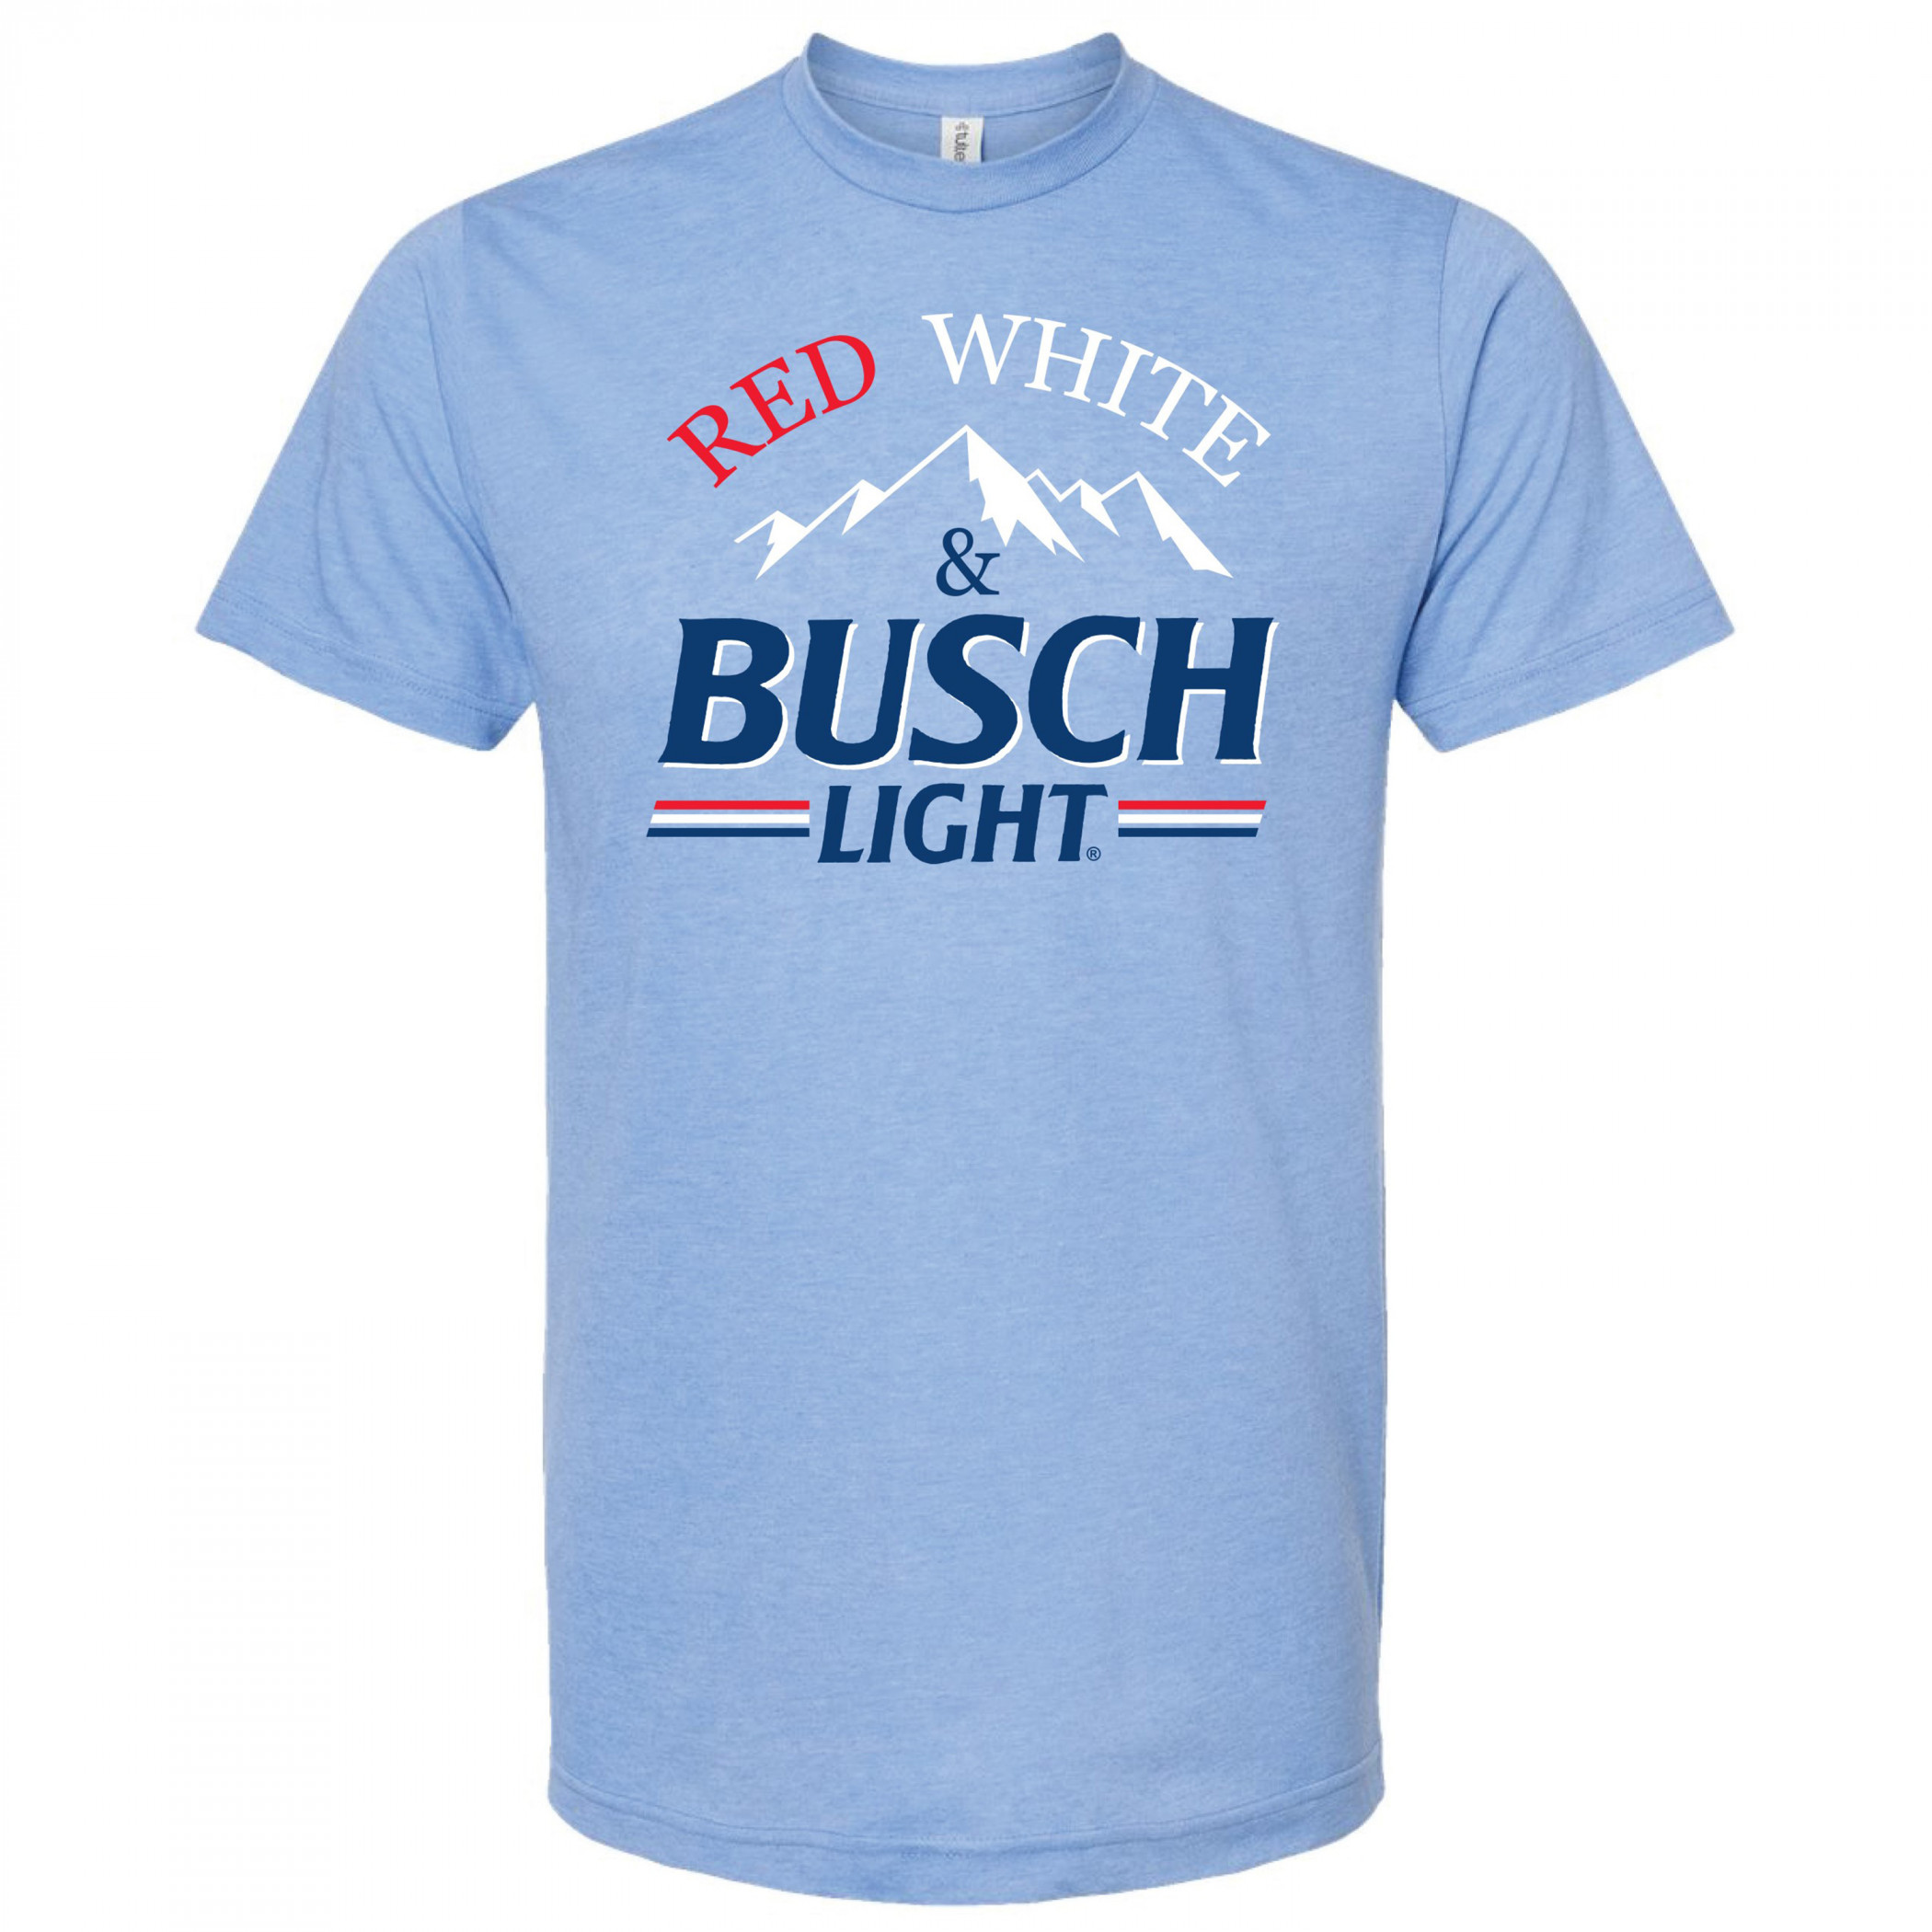 Busch Beer Red White & Busch T-Shirt